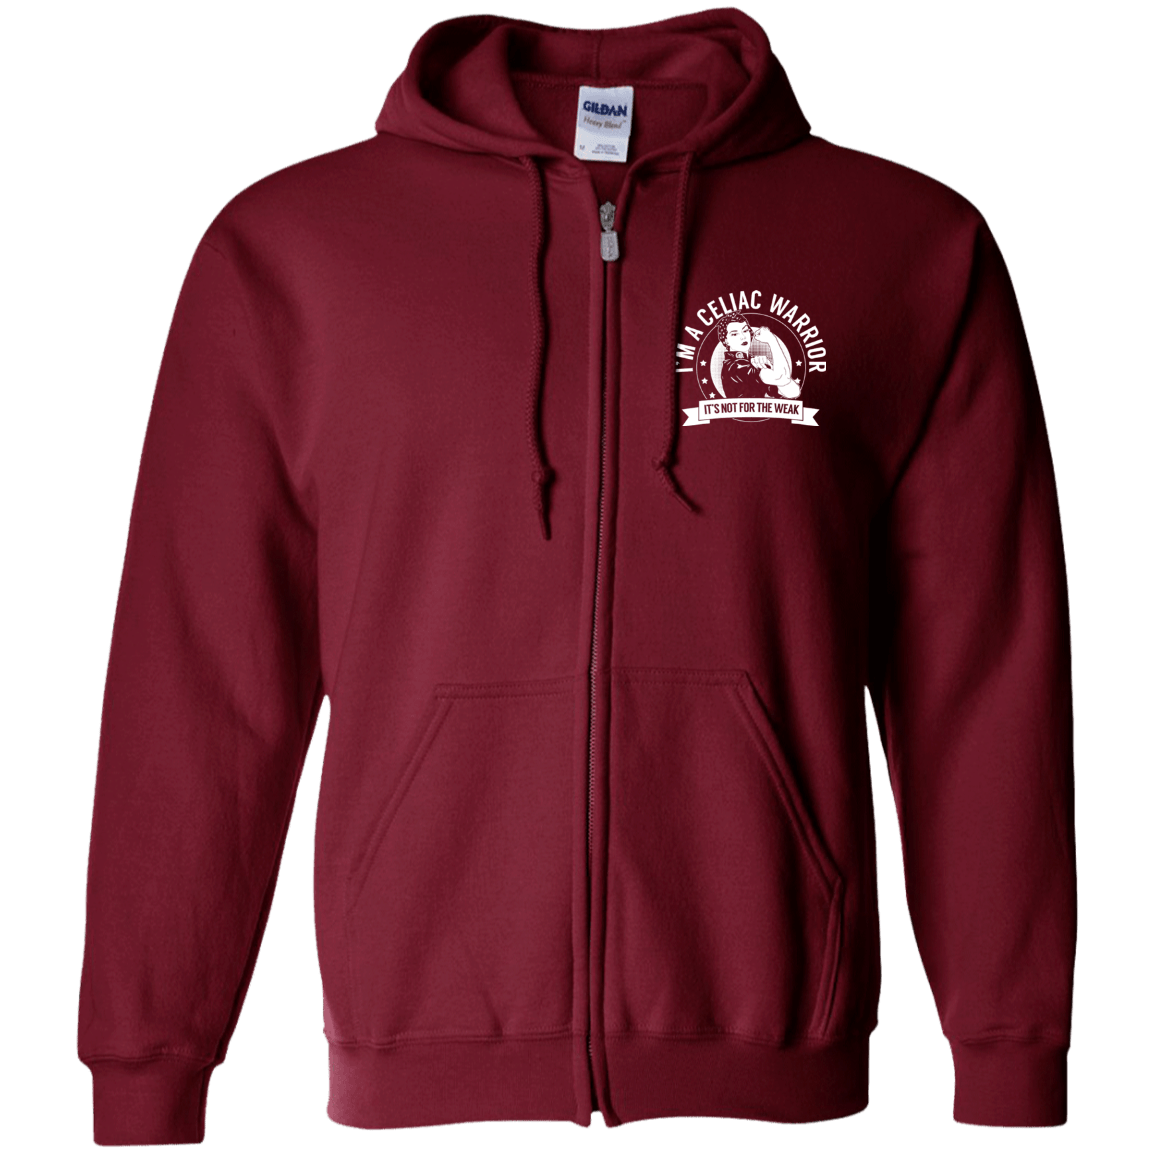 Celiac Warrior NFTW Zip Up Hooded Sweatshirt - The Unchargeables